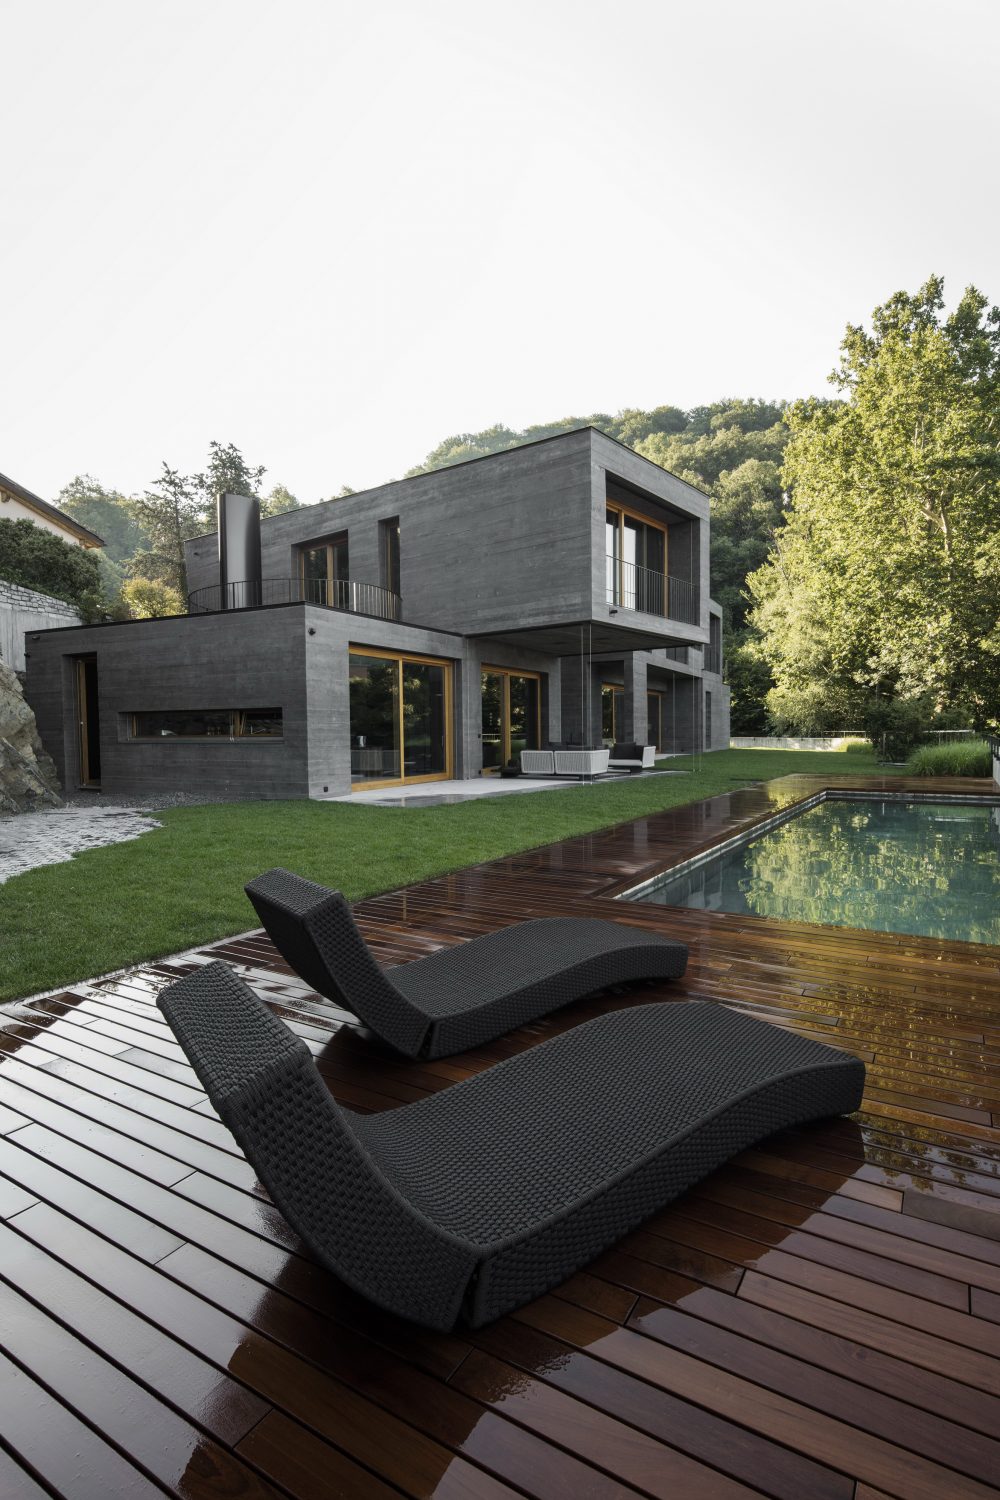 Villa Montagnola by Attilio Panzeri & Partners